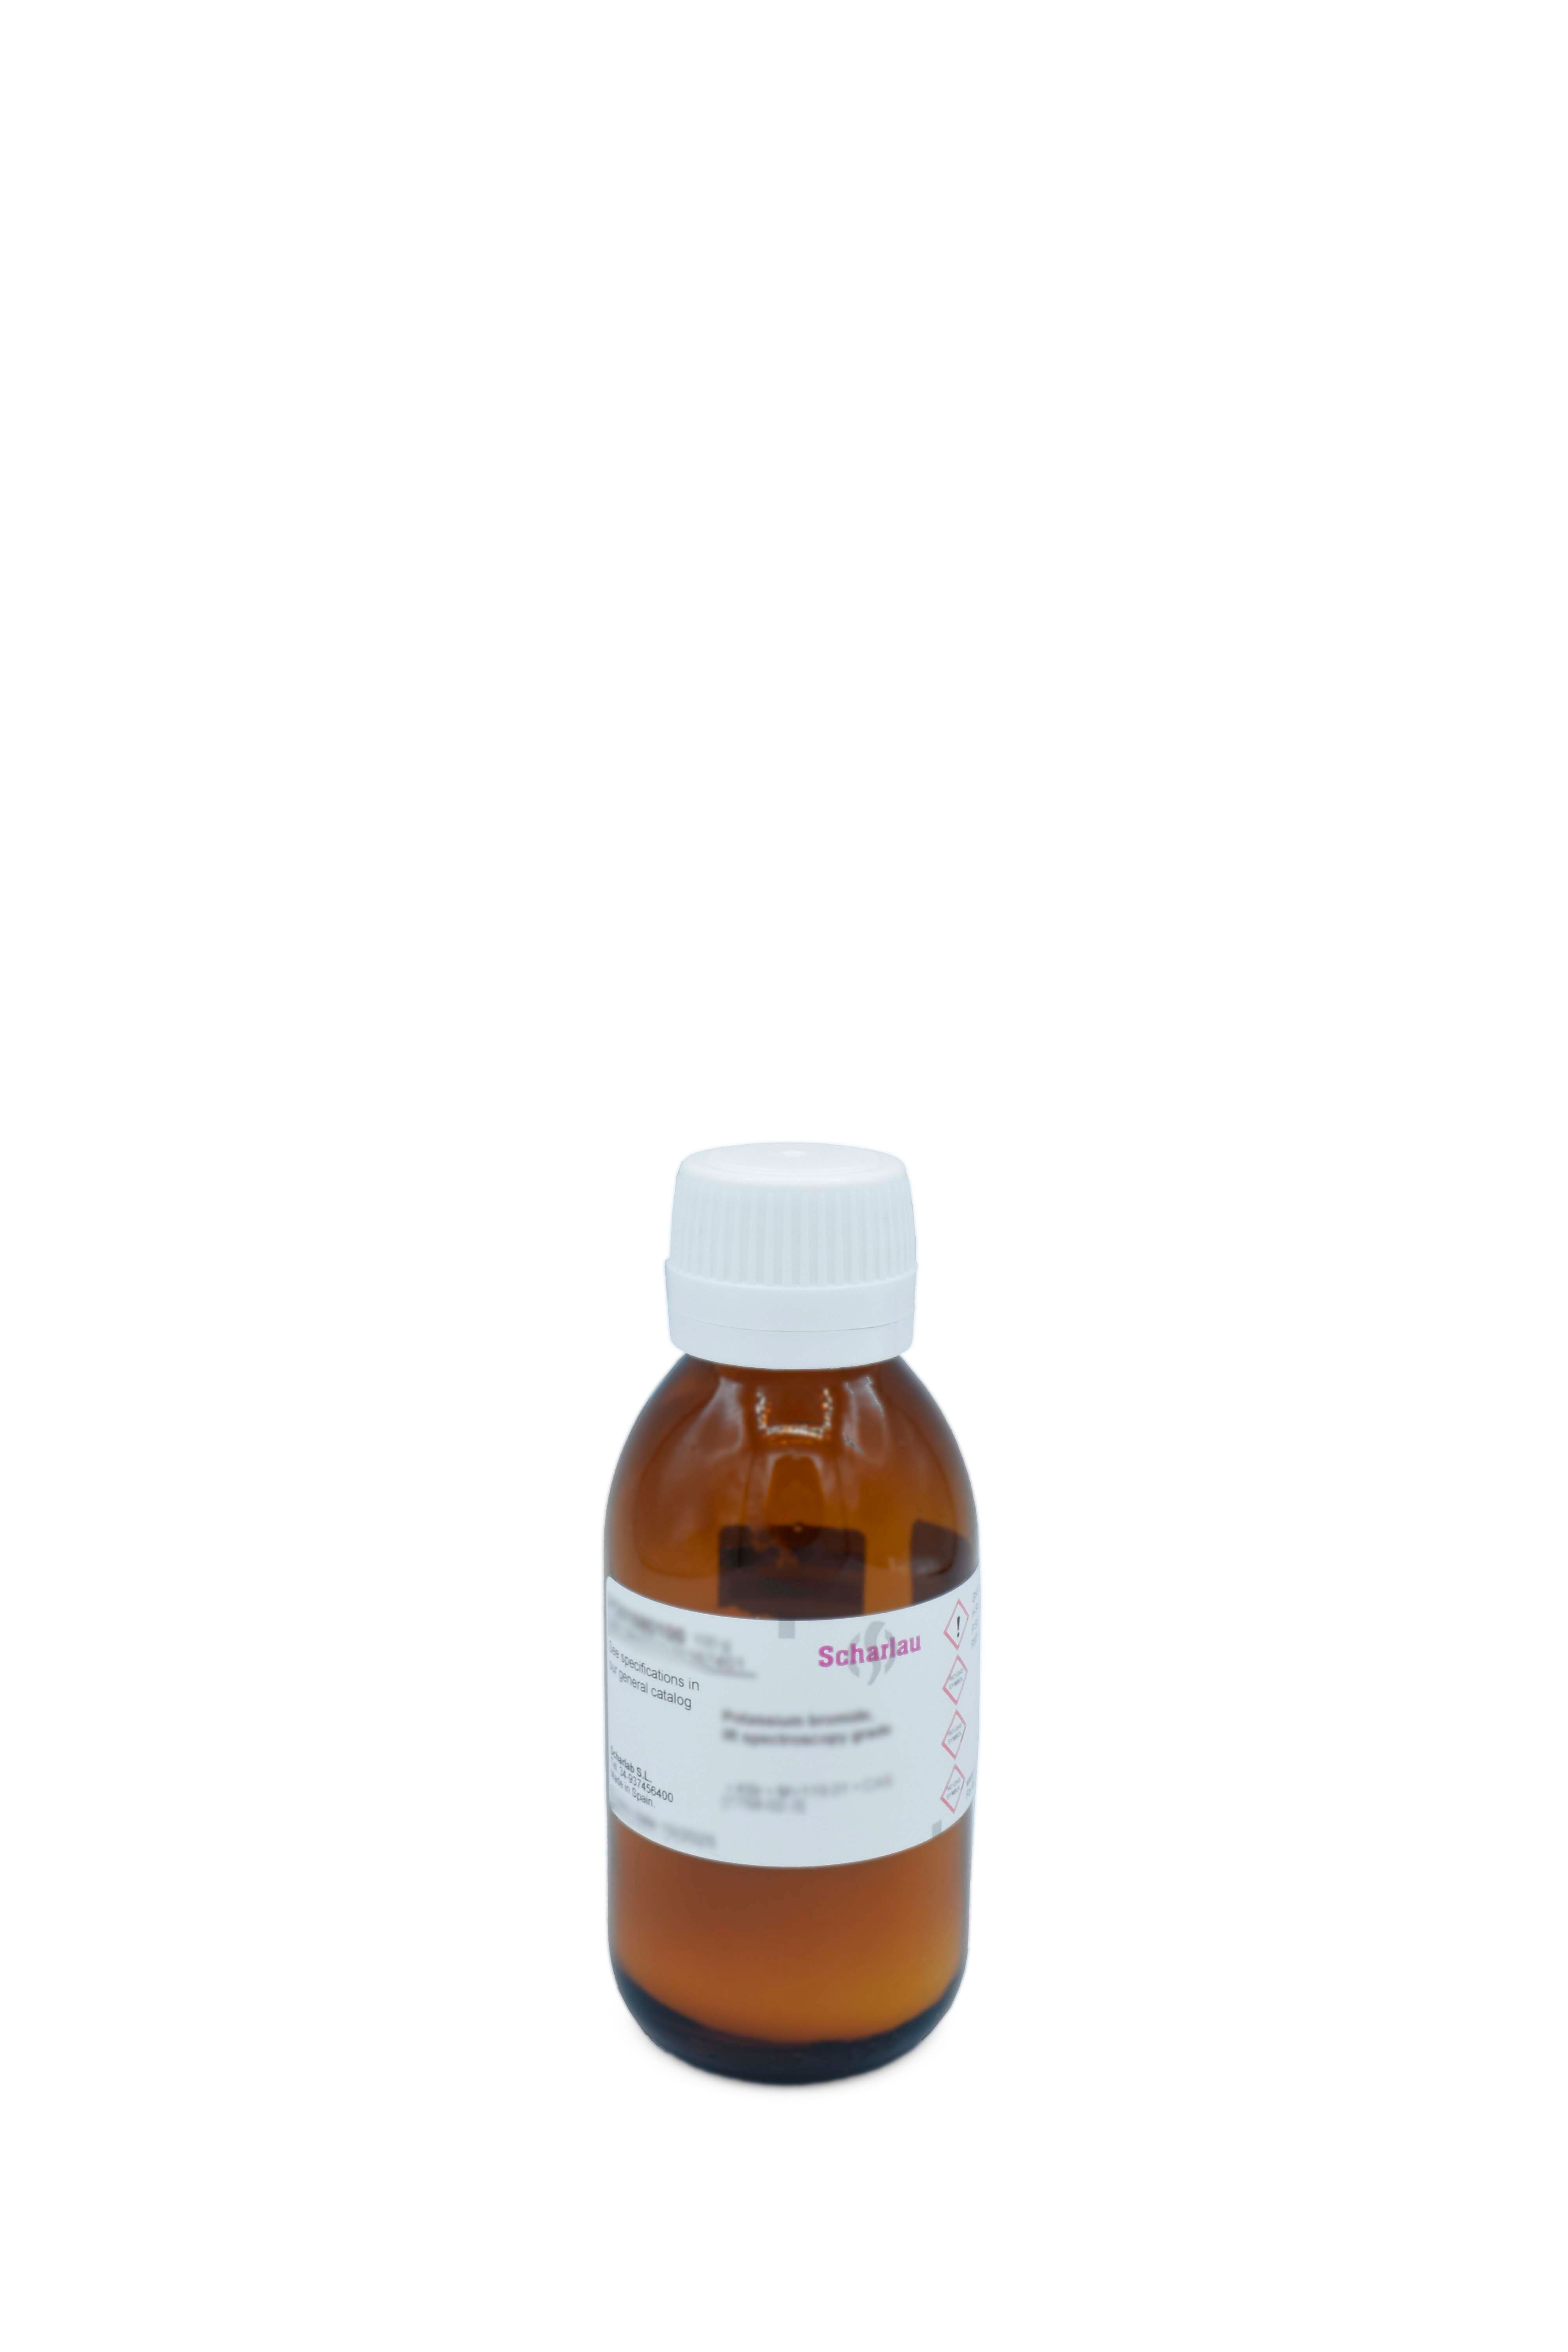 L-Asparagina monohidrato, Pharmpur®, Ph Eur, BP